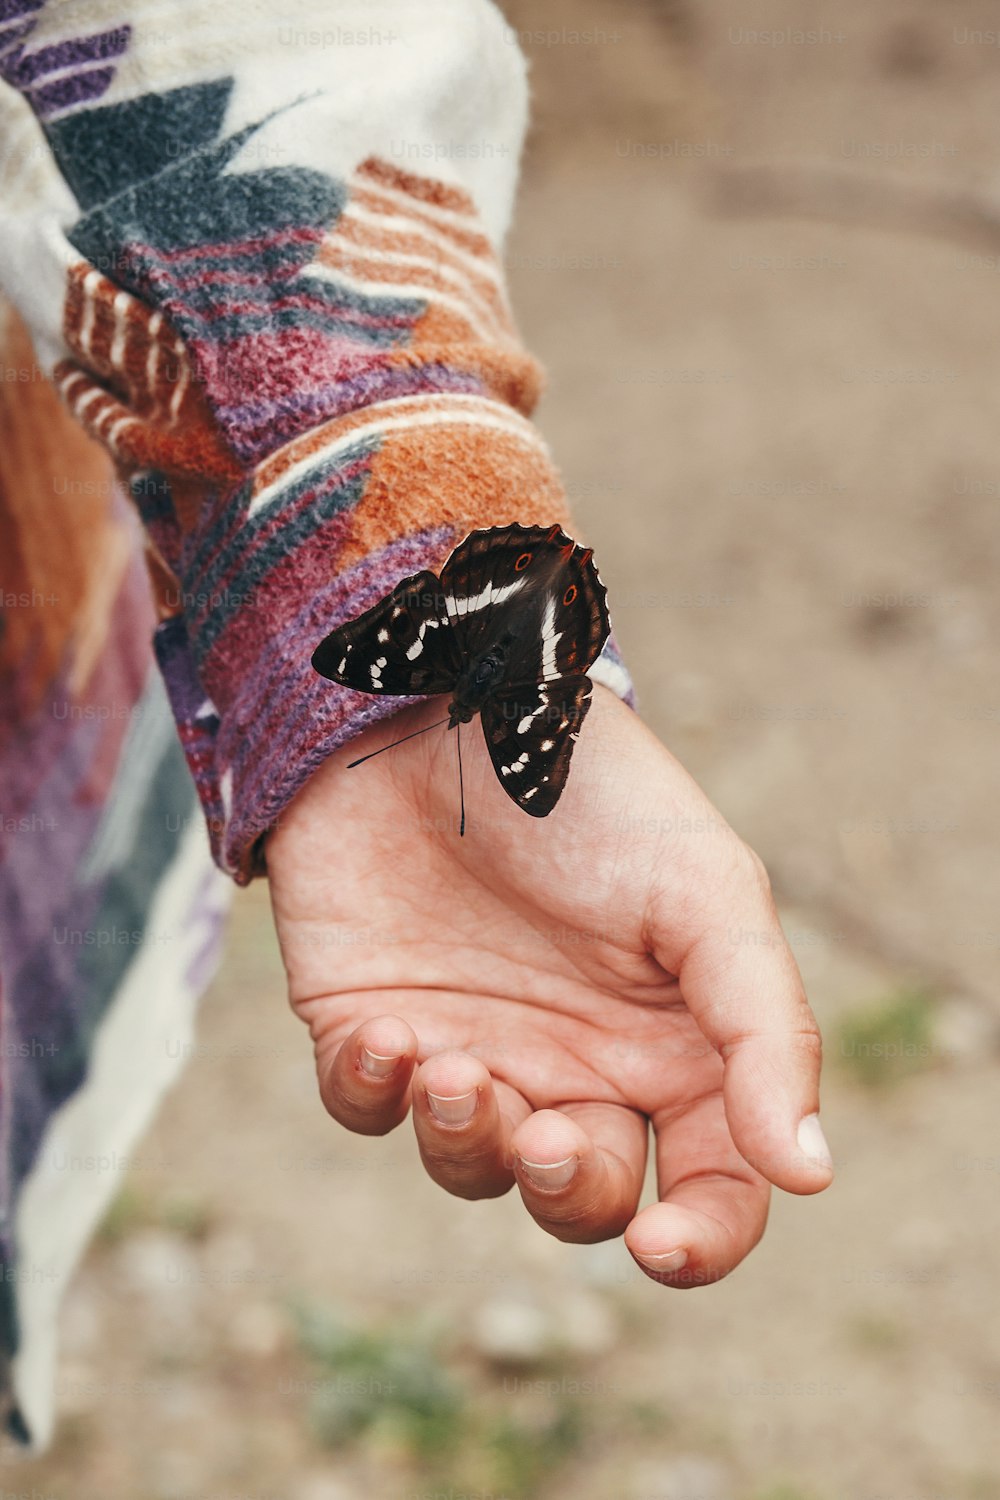 borboleta bonita na mão da menina. mulher feliz elegante segurando apatura íris nos dedos na floresta nas montanhas. conceito de viagem e desejo de viajar. espaço para texto. momento incrível. insetos em Ucrânia